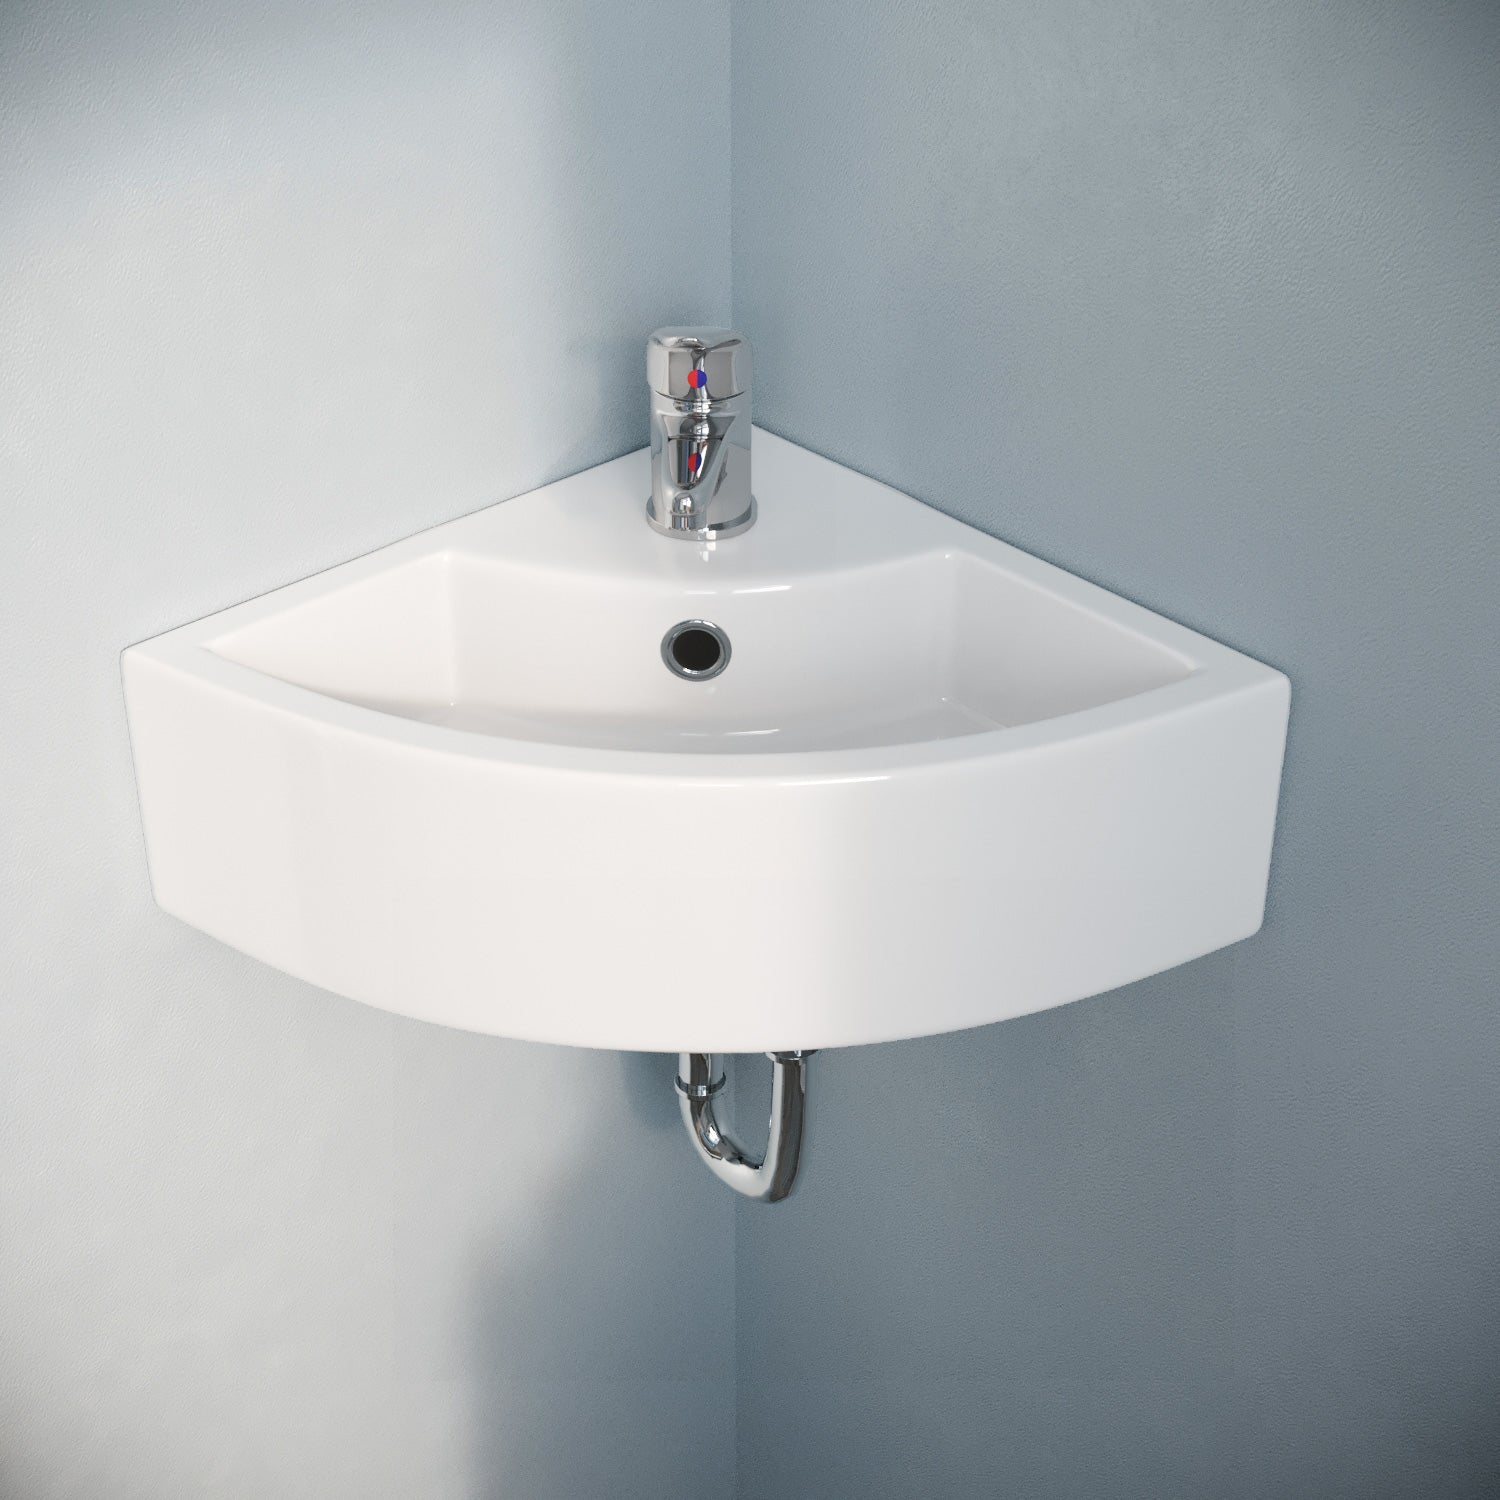 Tulla 450 x 325mm Compact Cloakroom Bathroom Wall Hung Hand Wash Corner Basin Sink